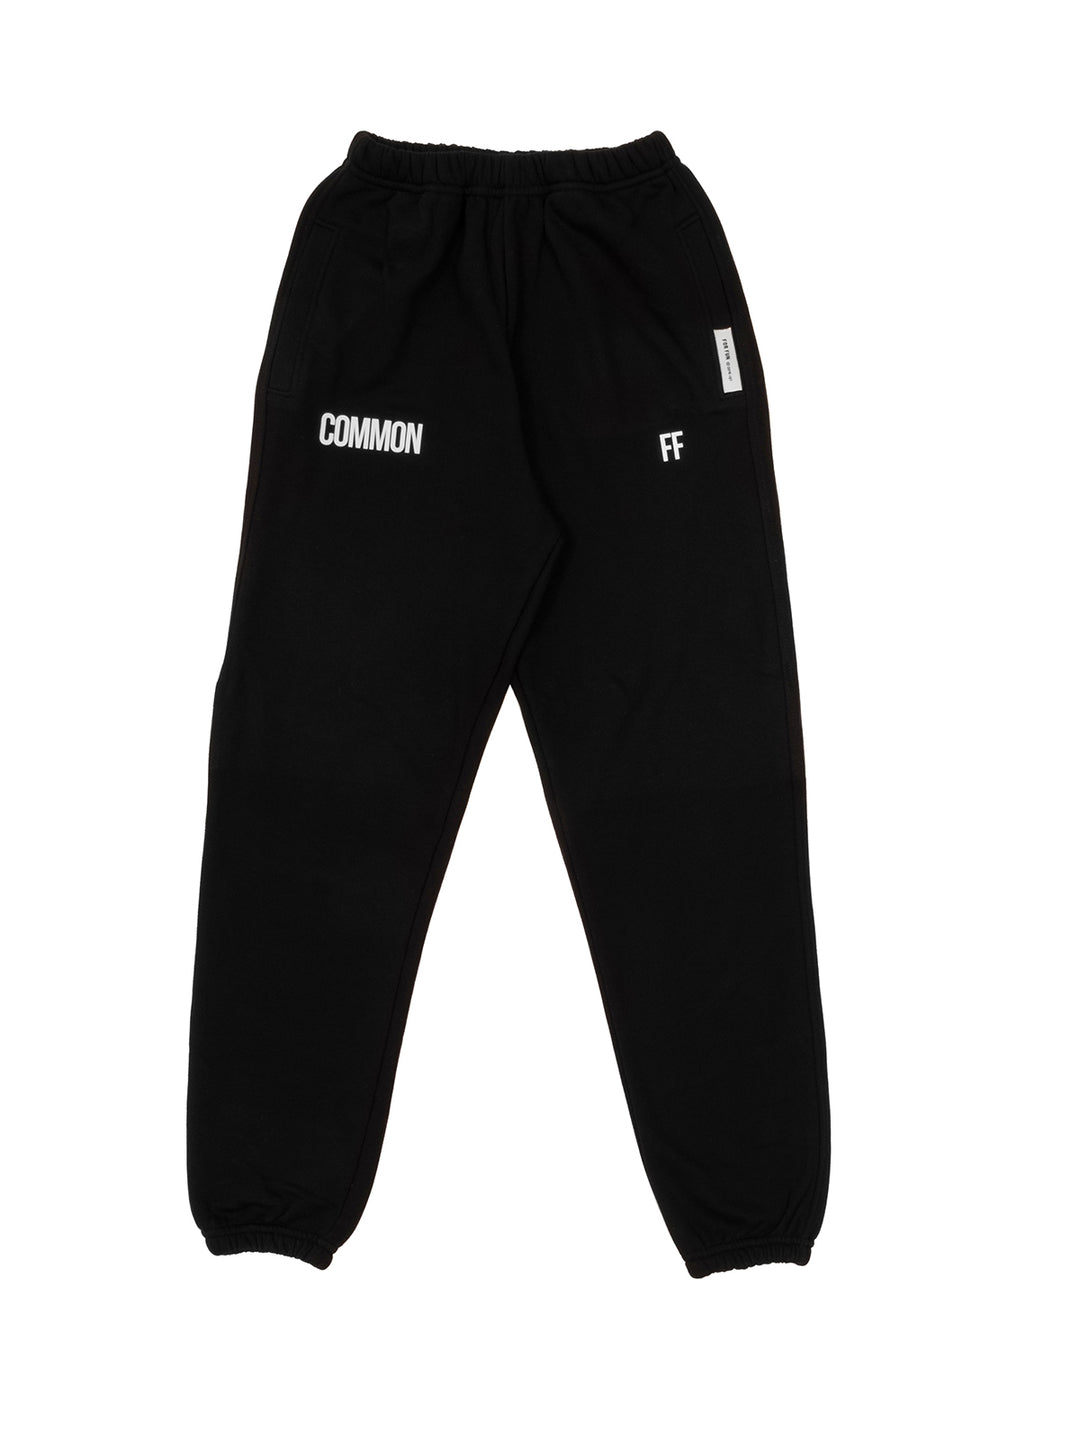 Common / Women's Sweatpants